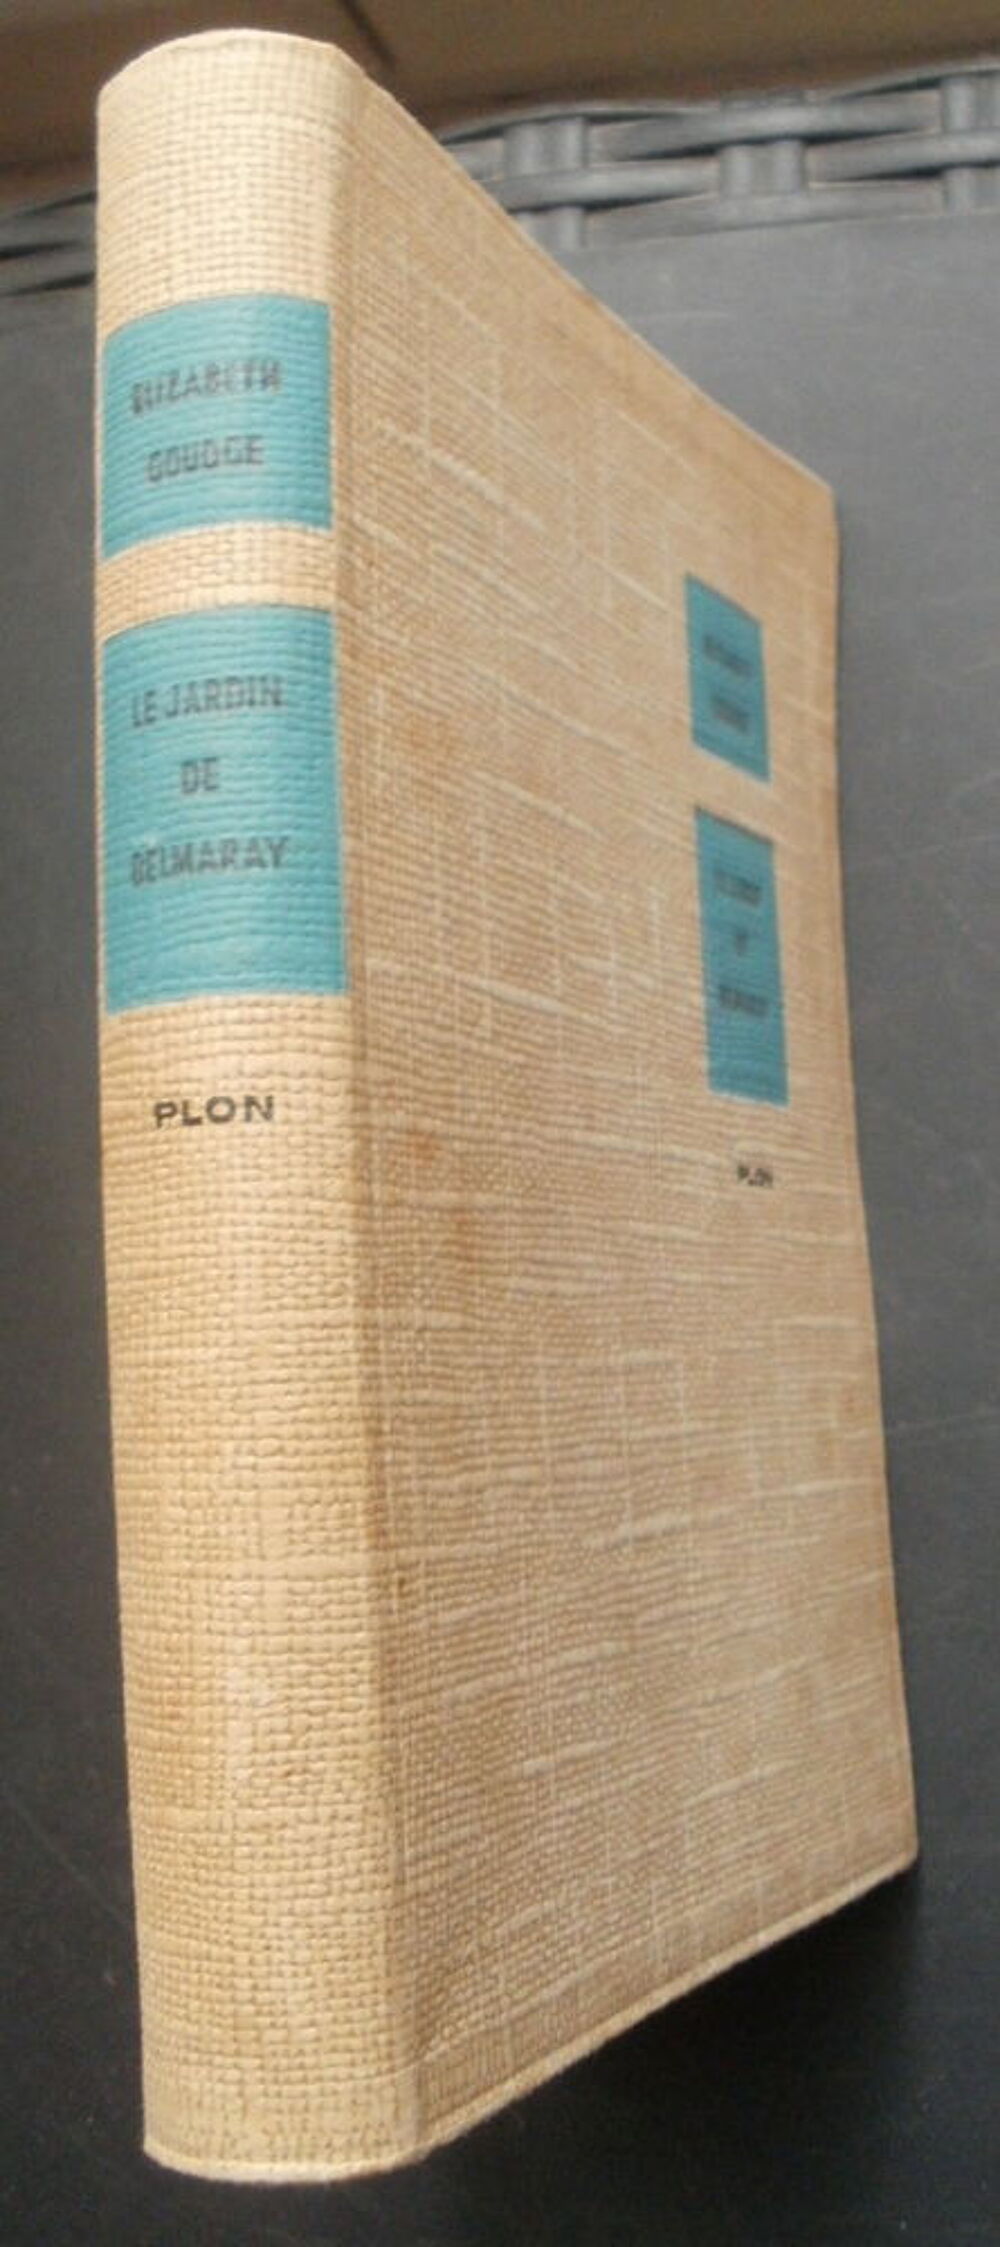 Elizabeth GOUDGE Le jardin de Belmaray - PLON - 1957 Livres et BD